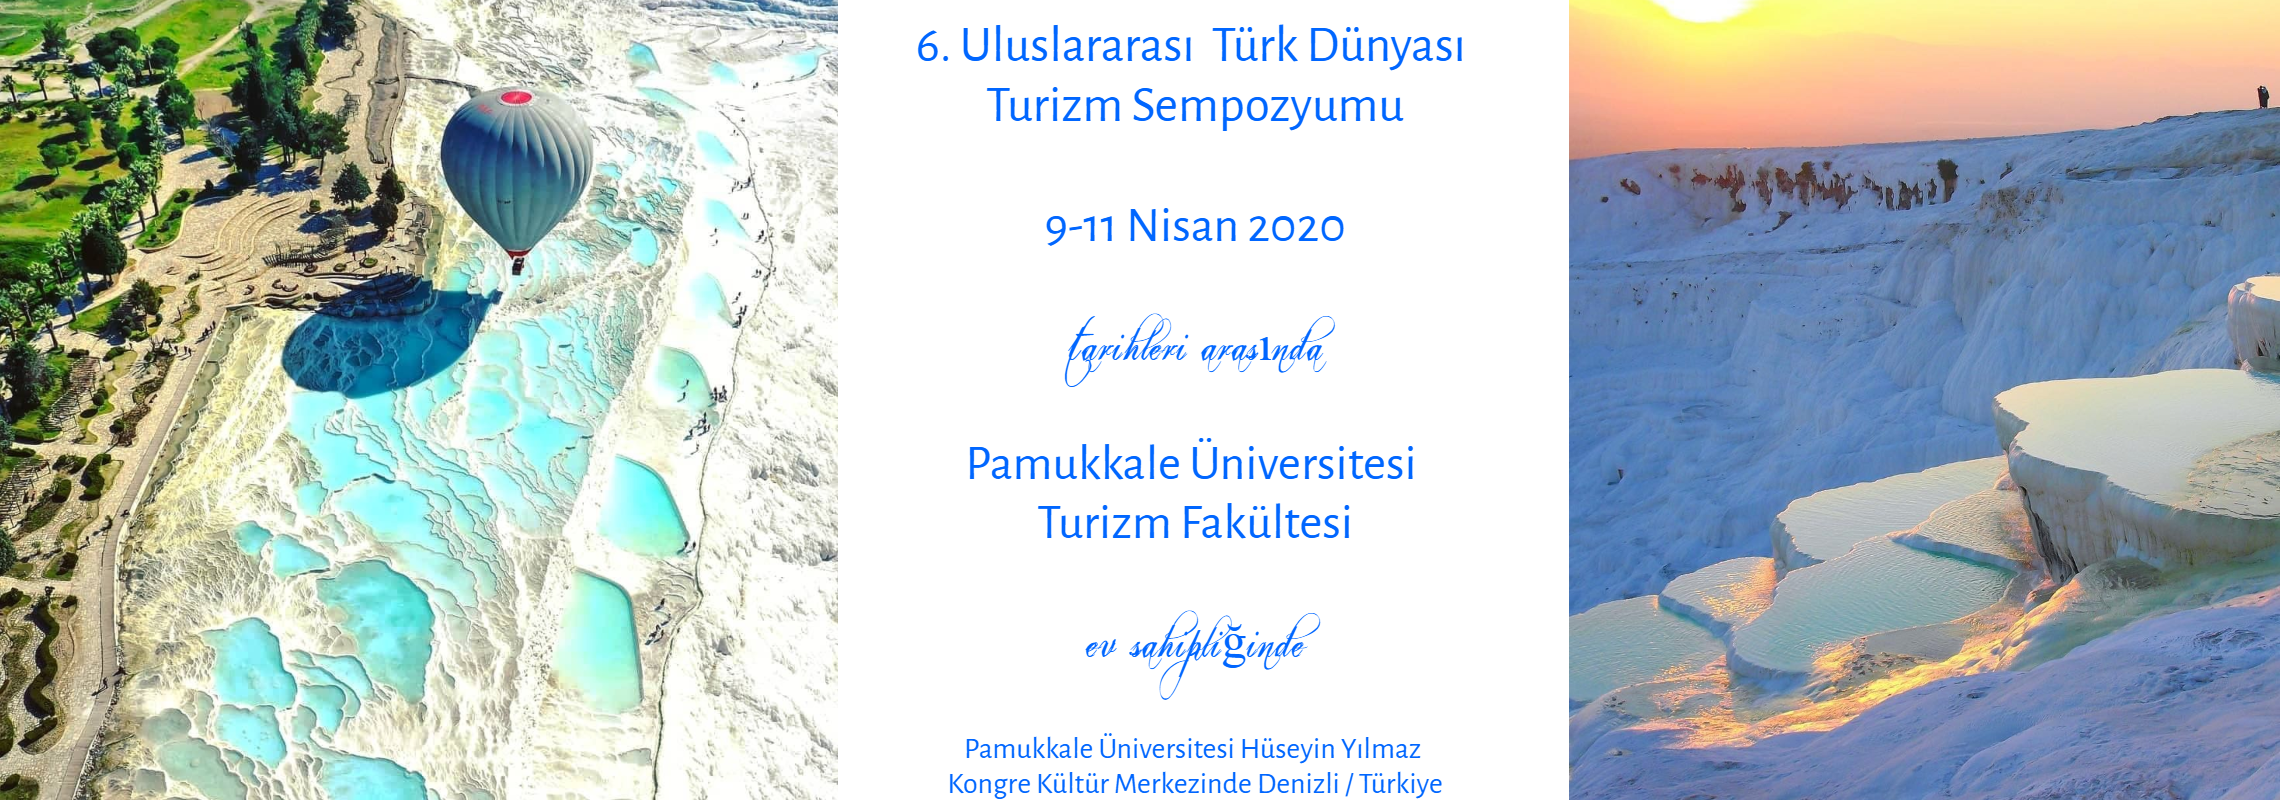 6. Uluslararası Türk Dünyası Turizm Sempozyumu afişi